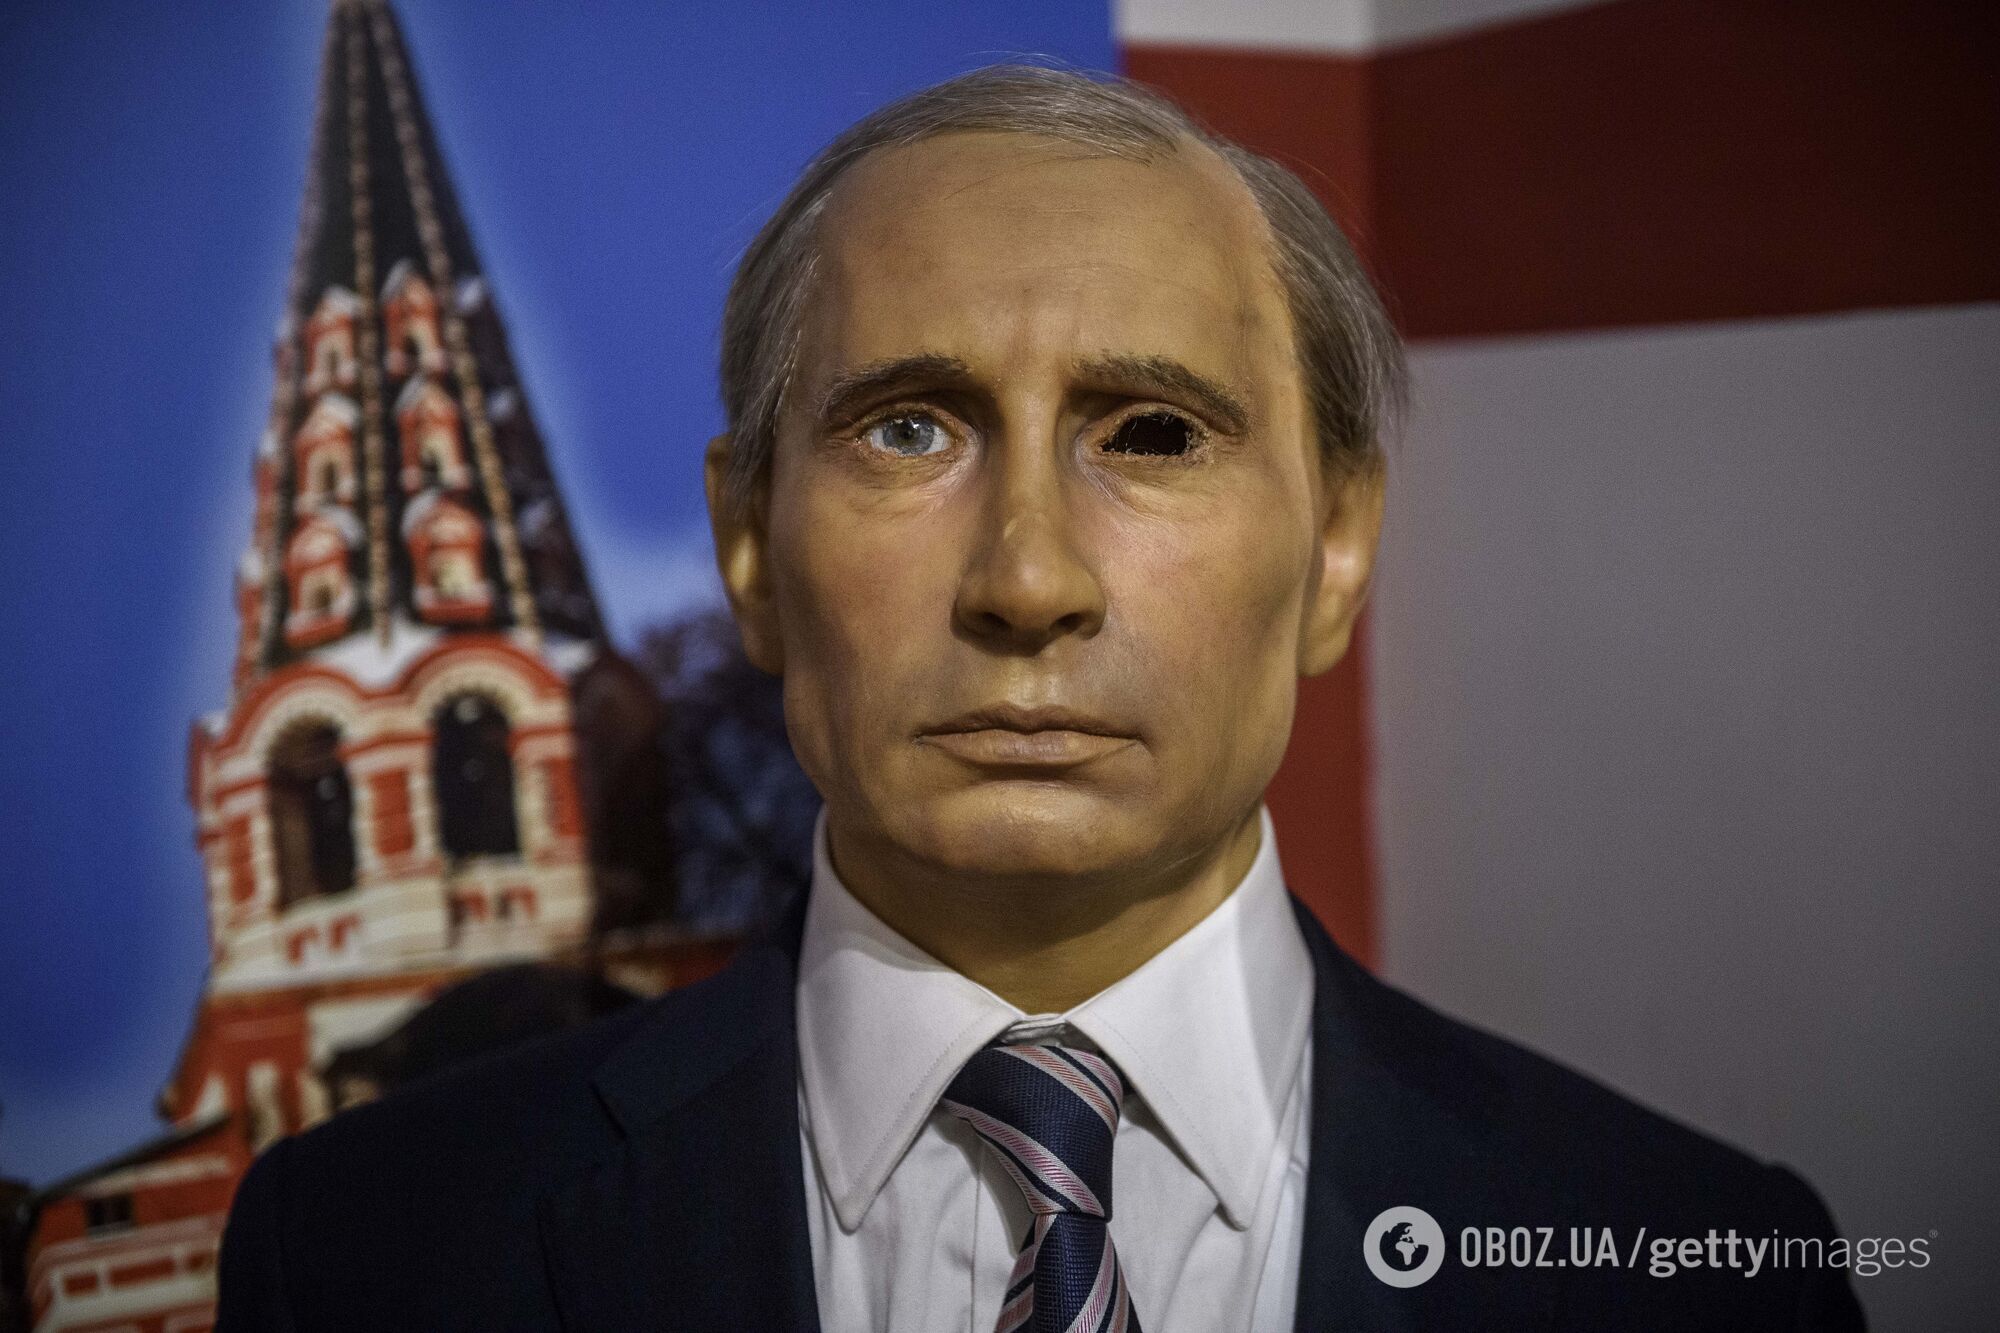 Директор музея заявил, что убирать воскового Путина не планируют